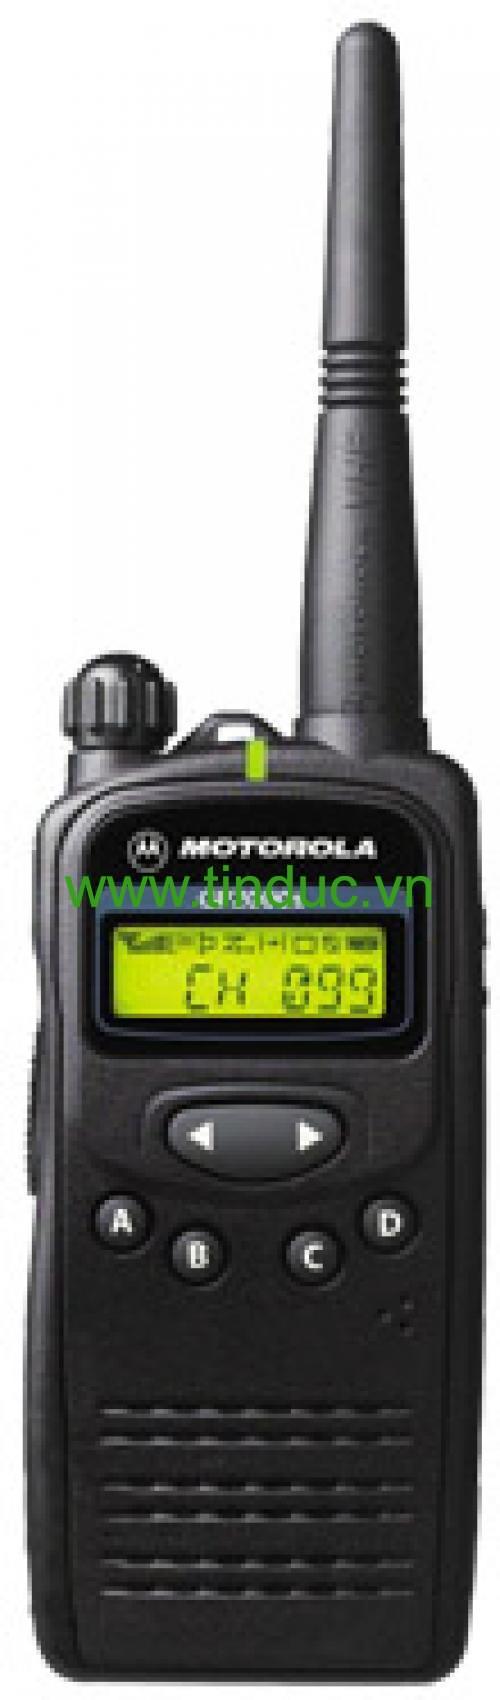 Bộ đàm Motorola GP-2000s